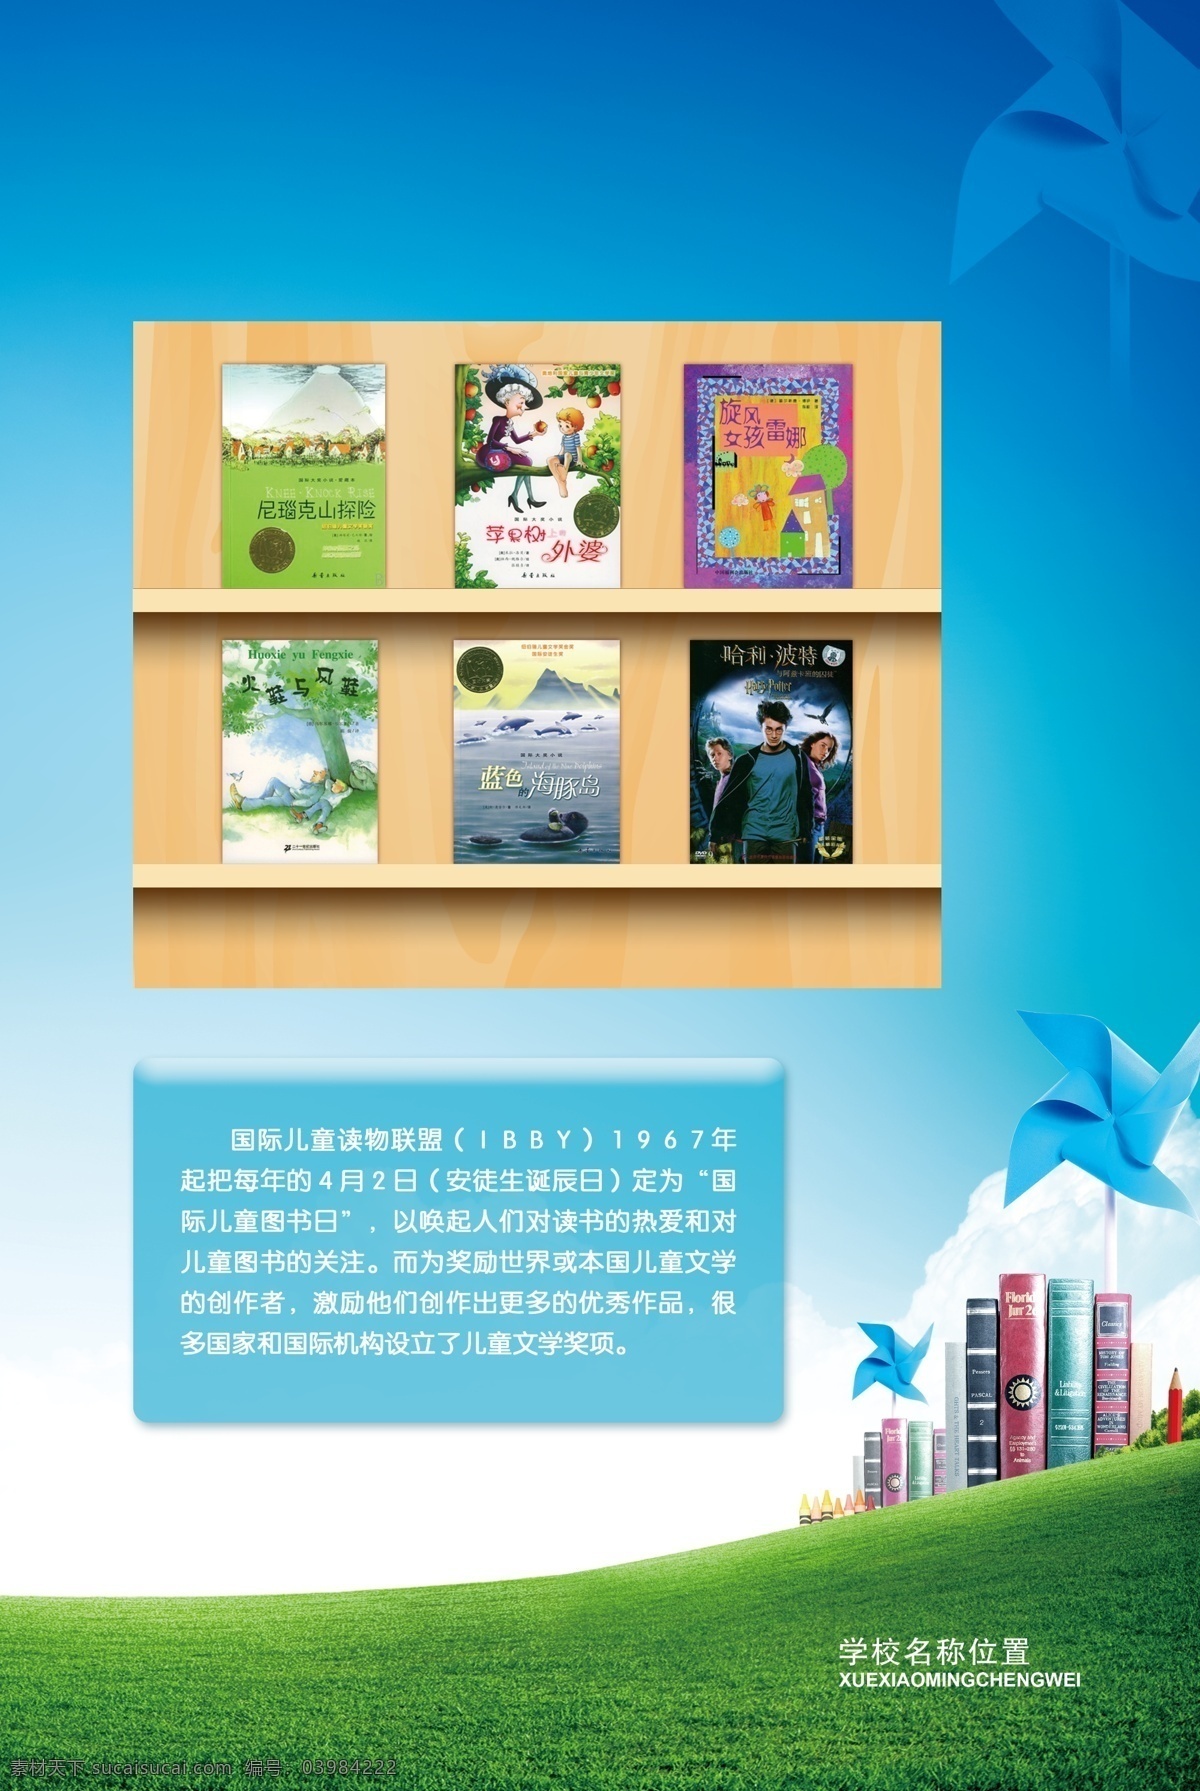 国际 儿童 图书 日 儿童读物 联盟 安徒生诞辰日 展板 学校展板设计